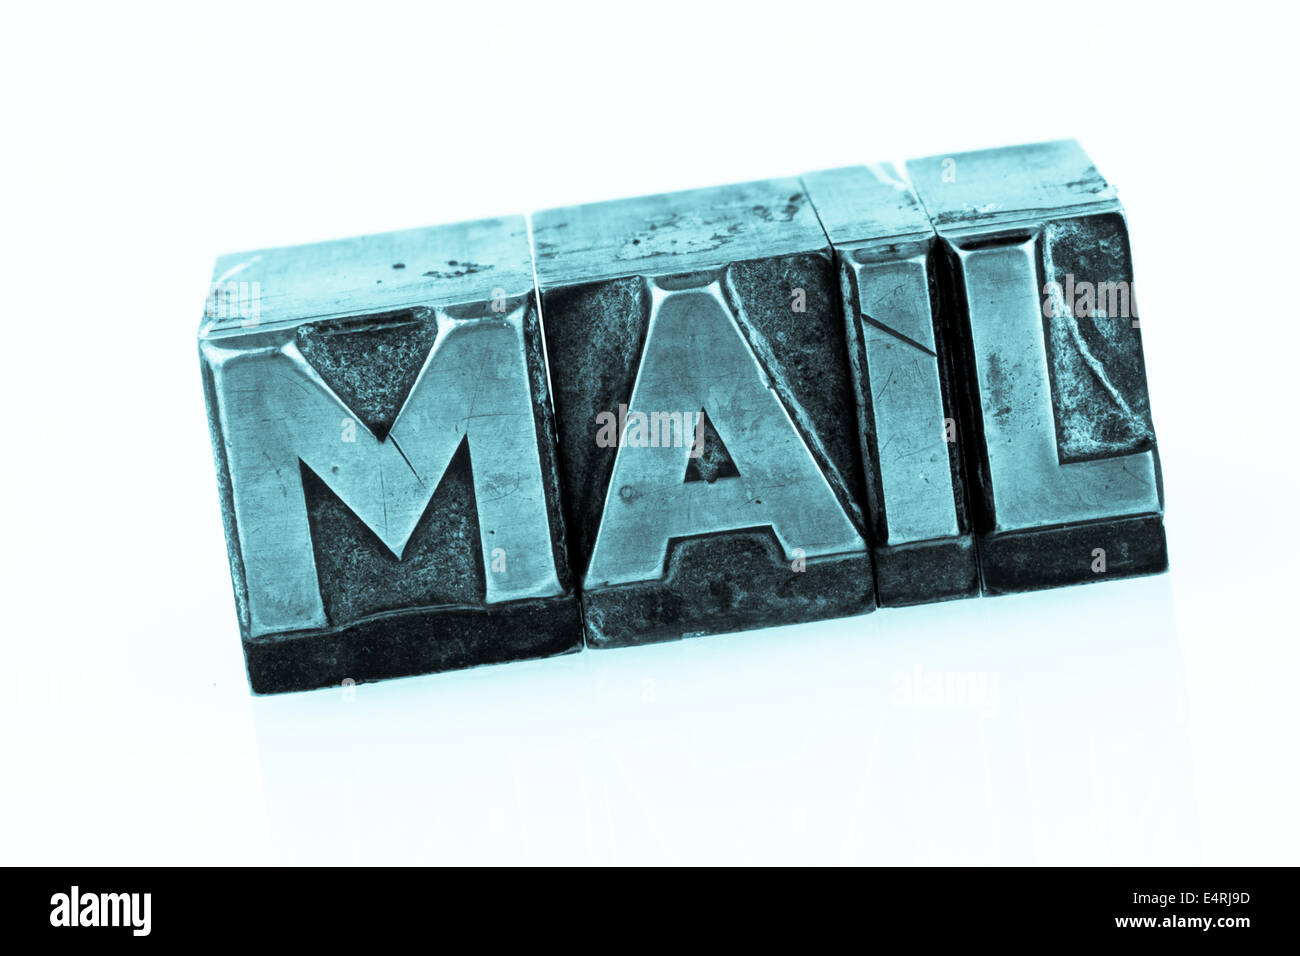 'Le mot ''e-mail'' en lettres de plomb. écrit photo symbolique pour la correspondance rapide', das Wort ' e-mail ' dans Bleibuchstaben Banque D'Images